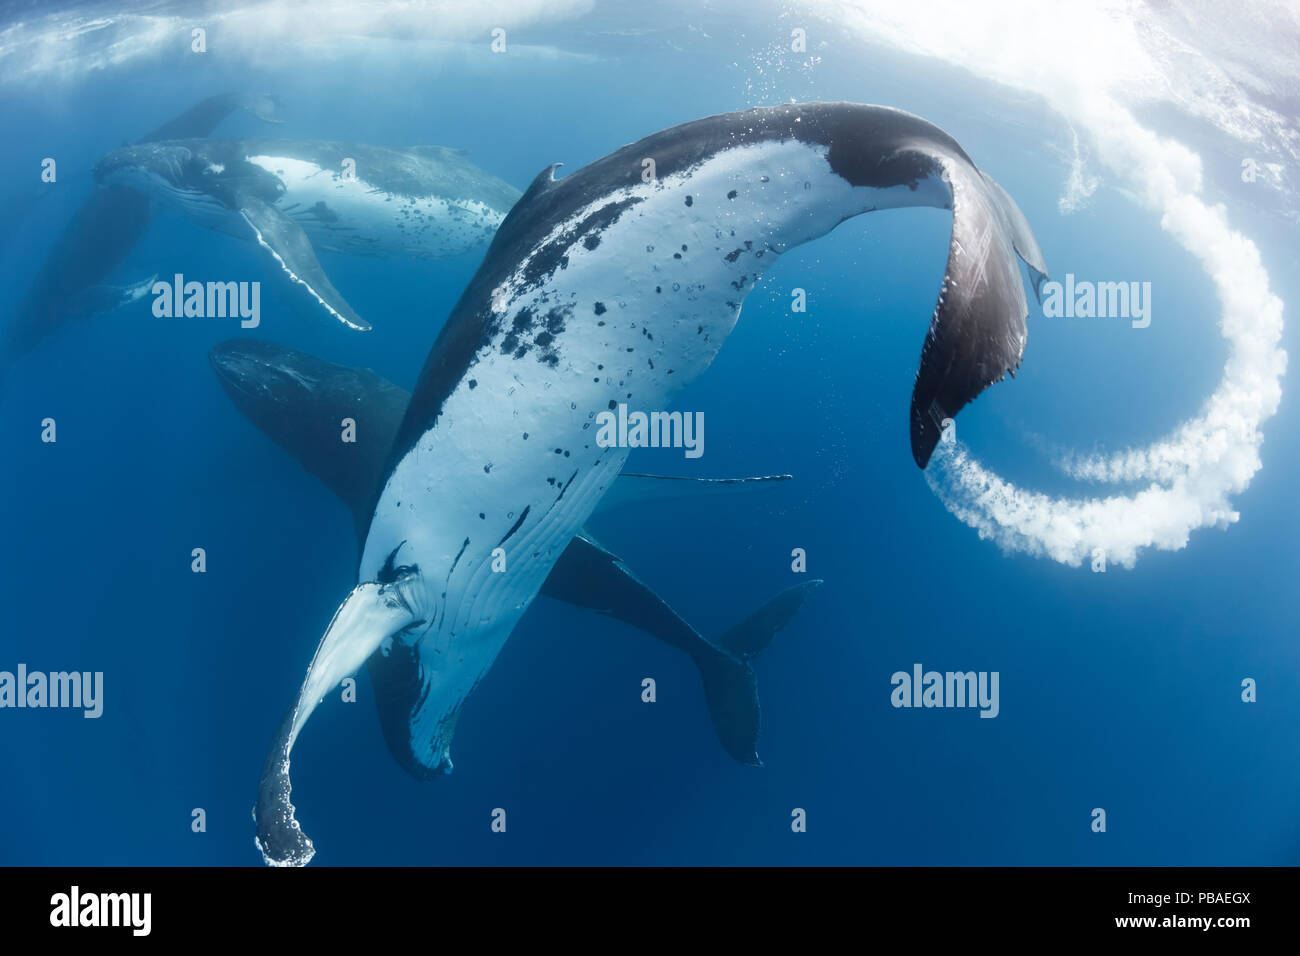 Les baleines à bosse (Megaptera novaeangliae) dans un terme, avec six mâles en compétition pour l'attention d'une femme qui a déjà un veau. Vava'u, Royaume des Tonga Banque D'Images